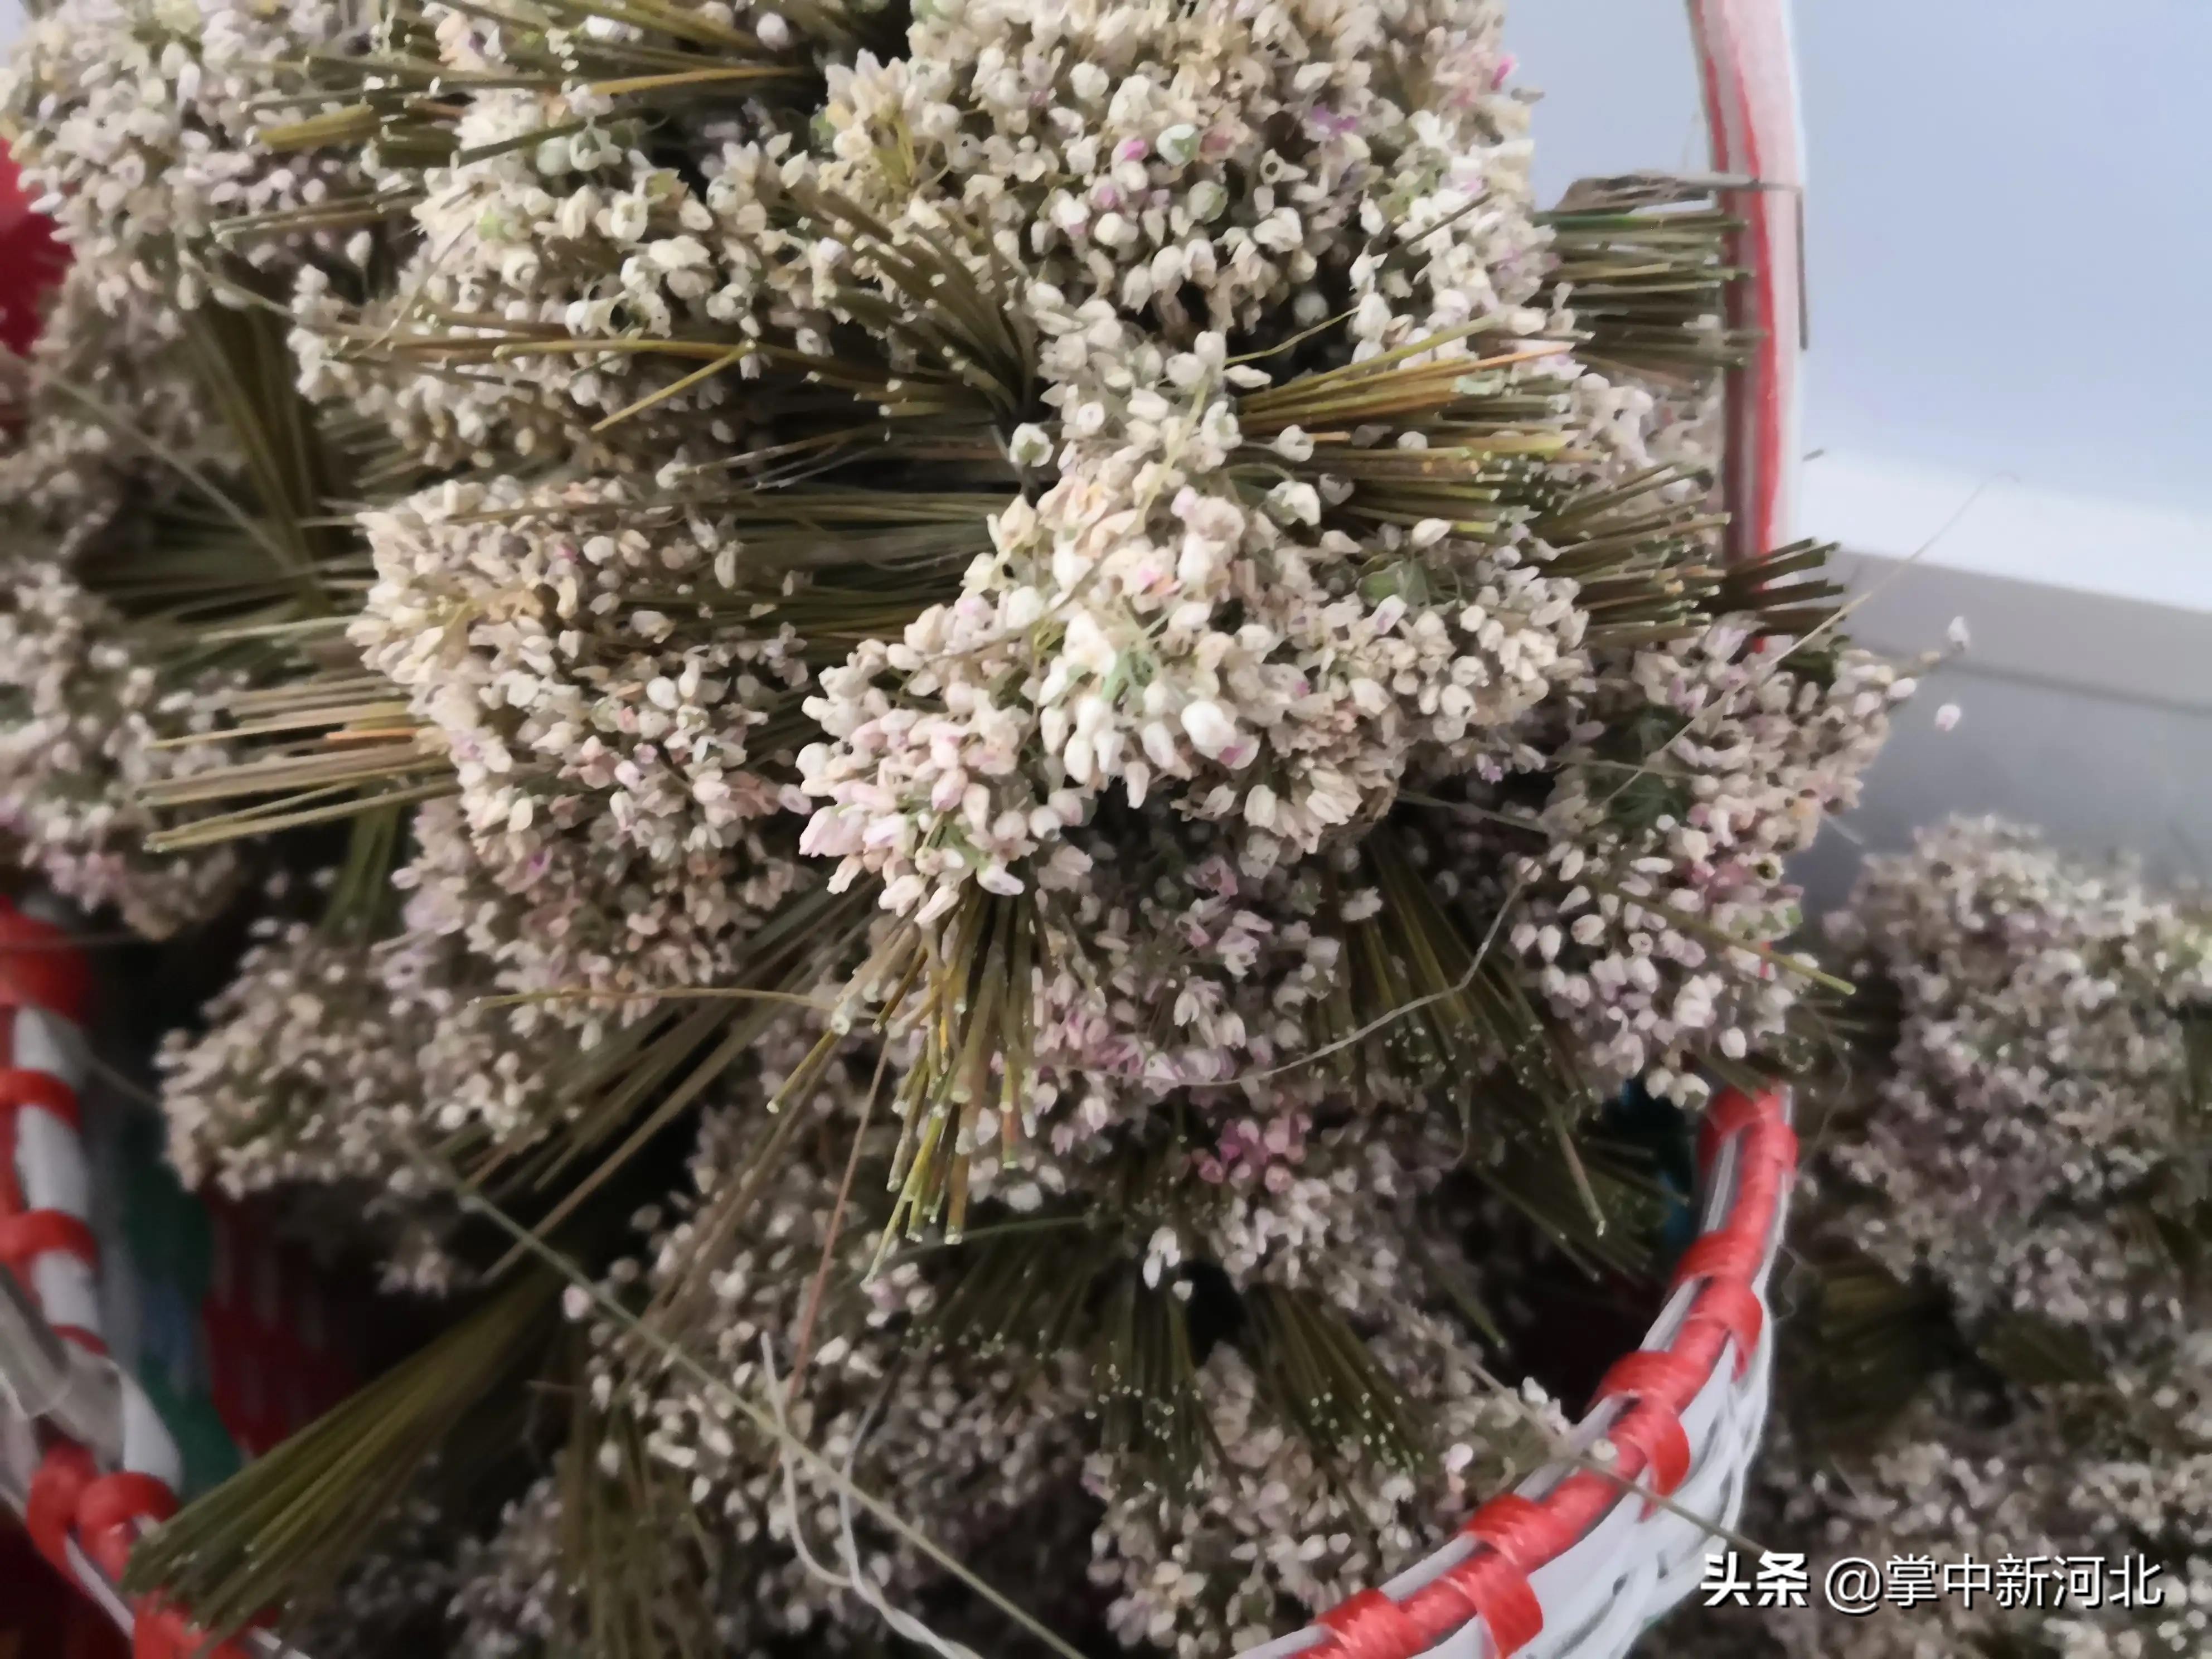 慶祝第四屆中國豐收節活動在邢臺信都區太子井鄉特色農品展舉行